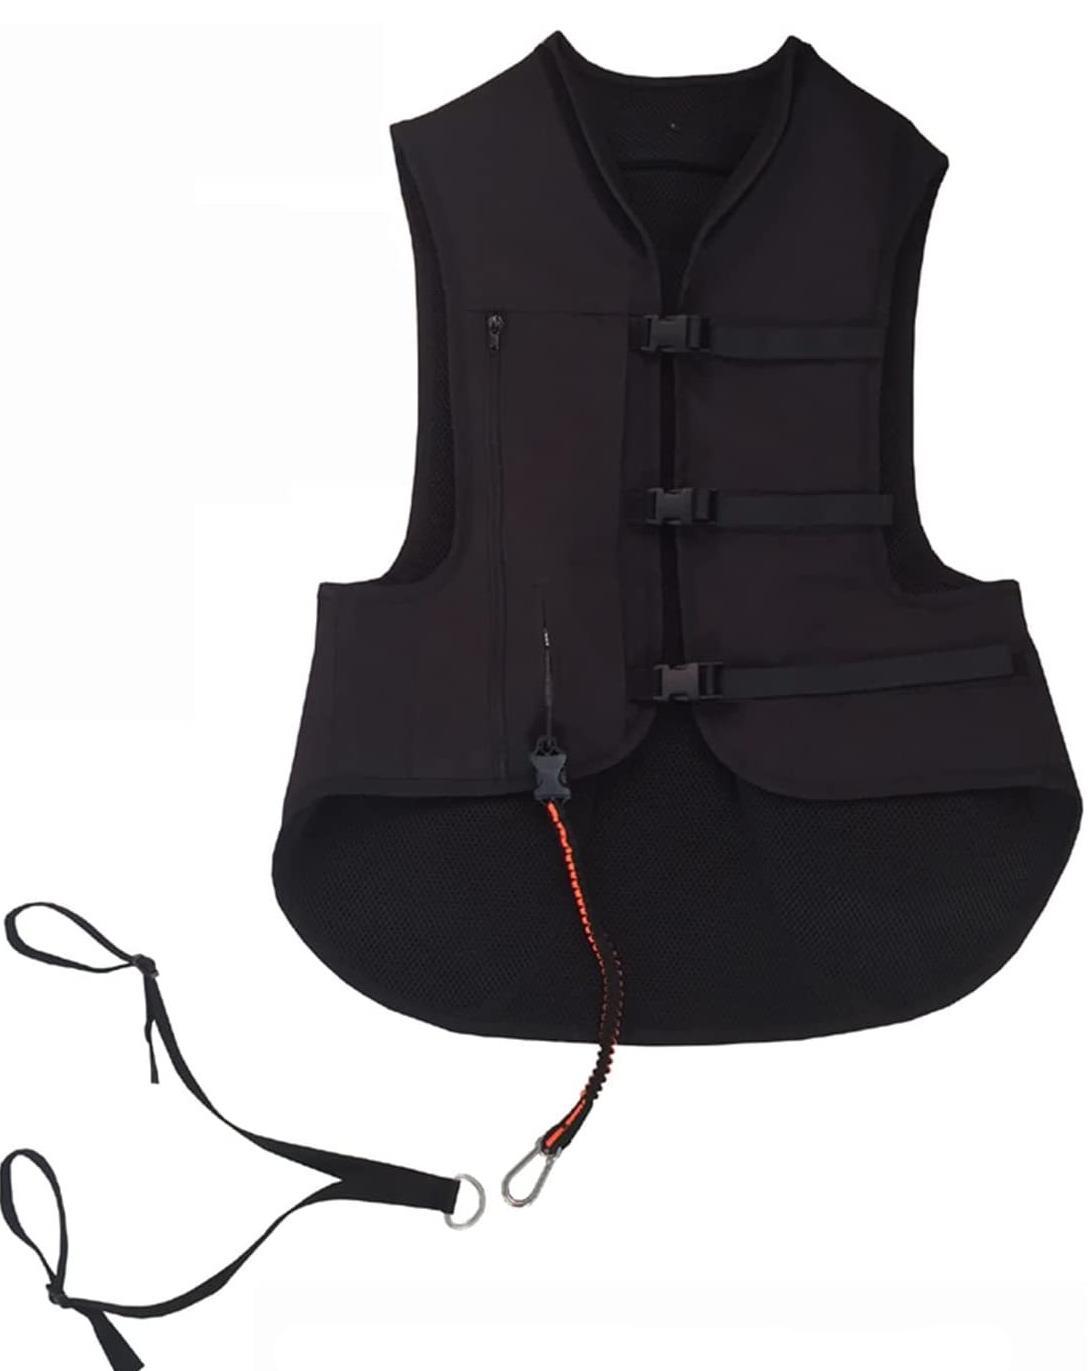 Rider Safety Airbag Vest 600D Fabric Lightweight Children/ Adults Unisex